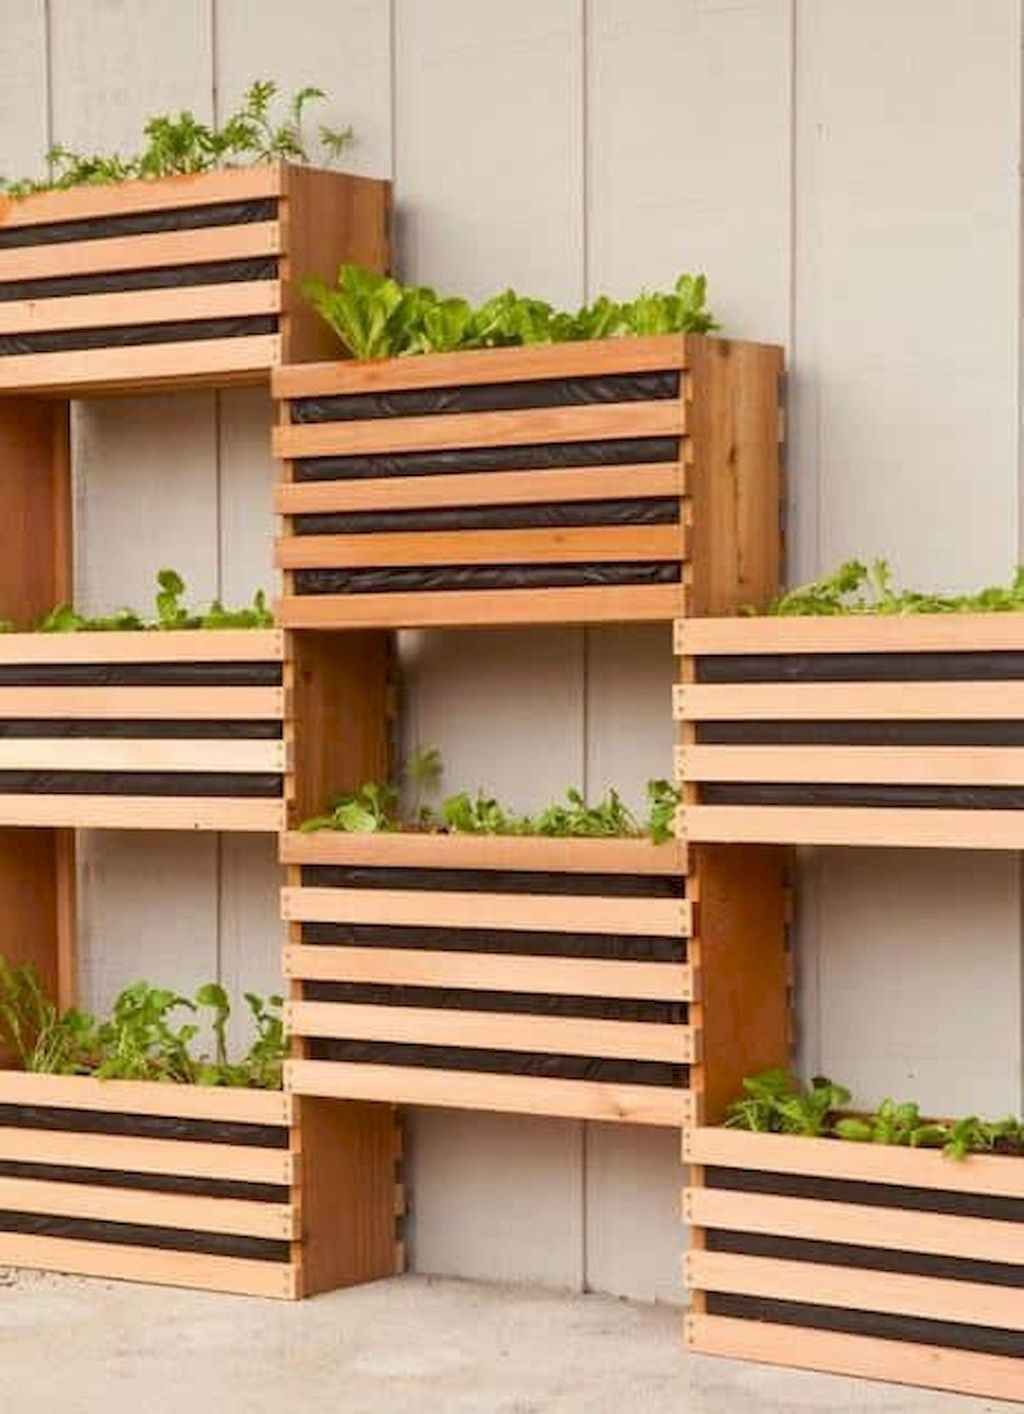 Vertical Vegetable Garden Ideas Quiet Corner